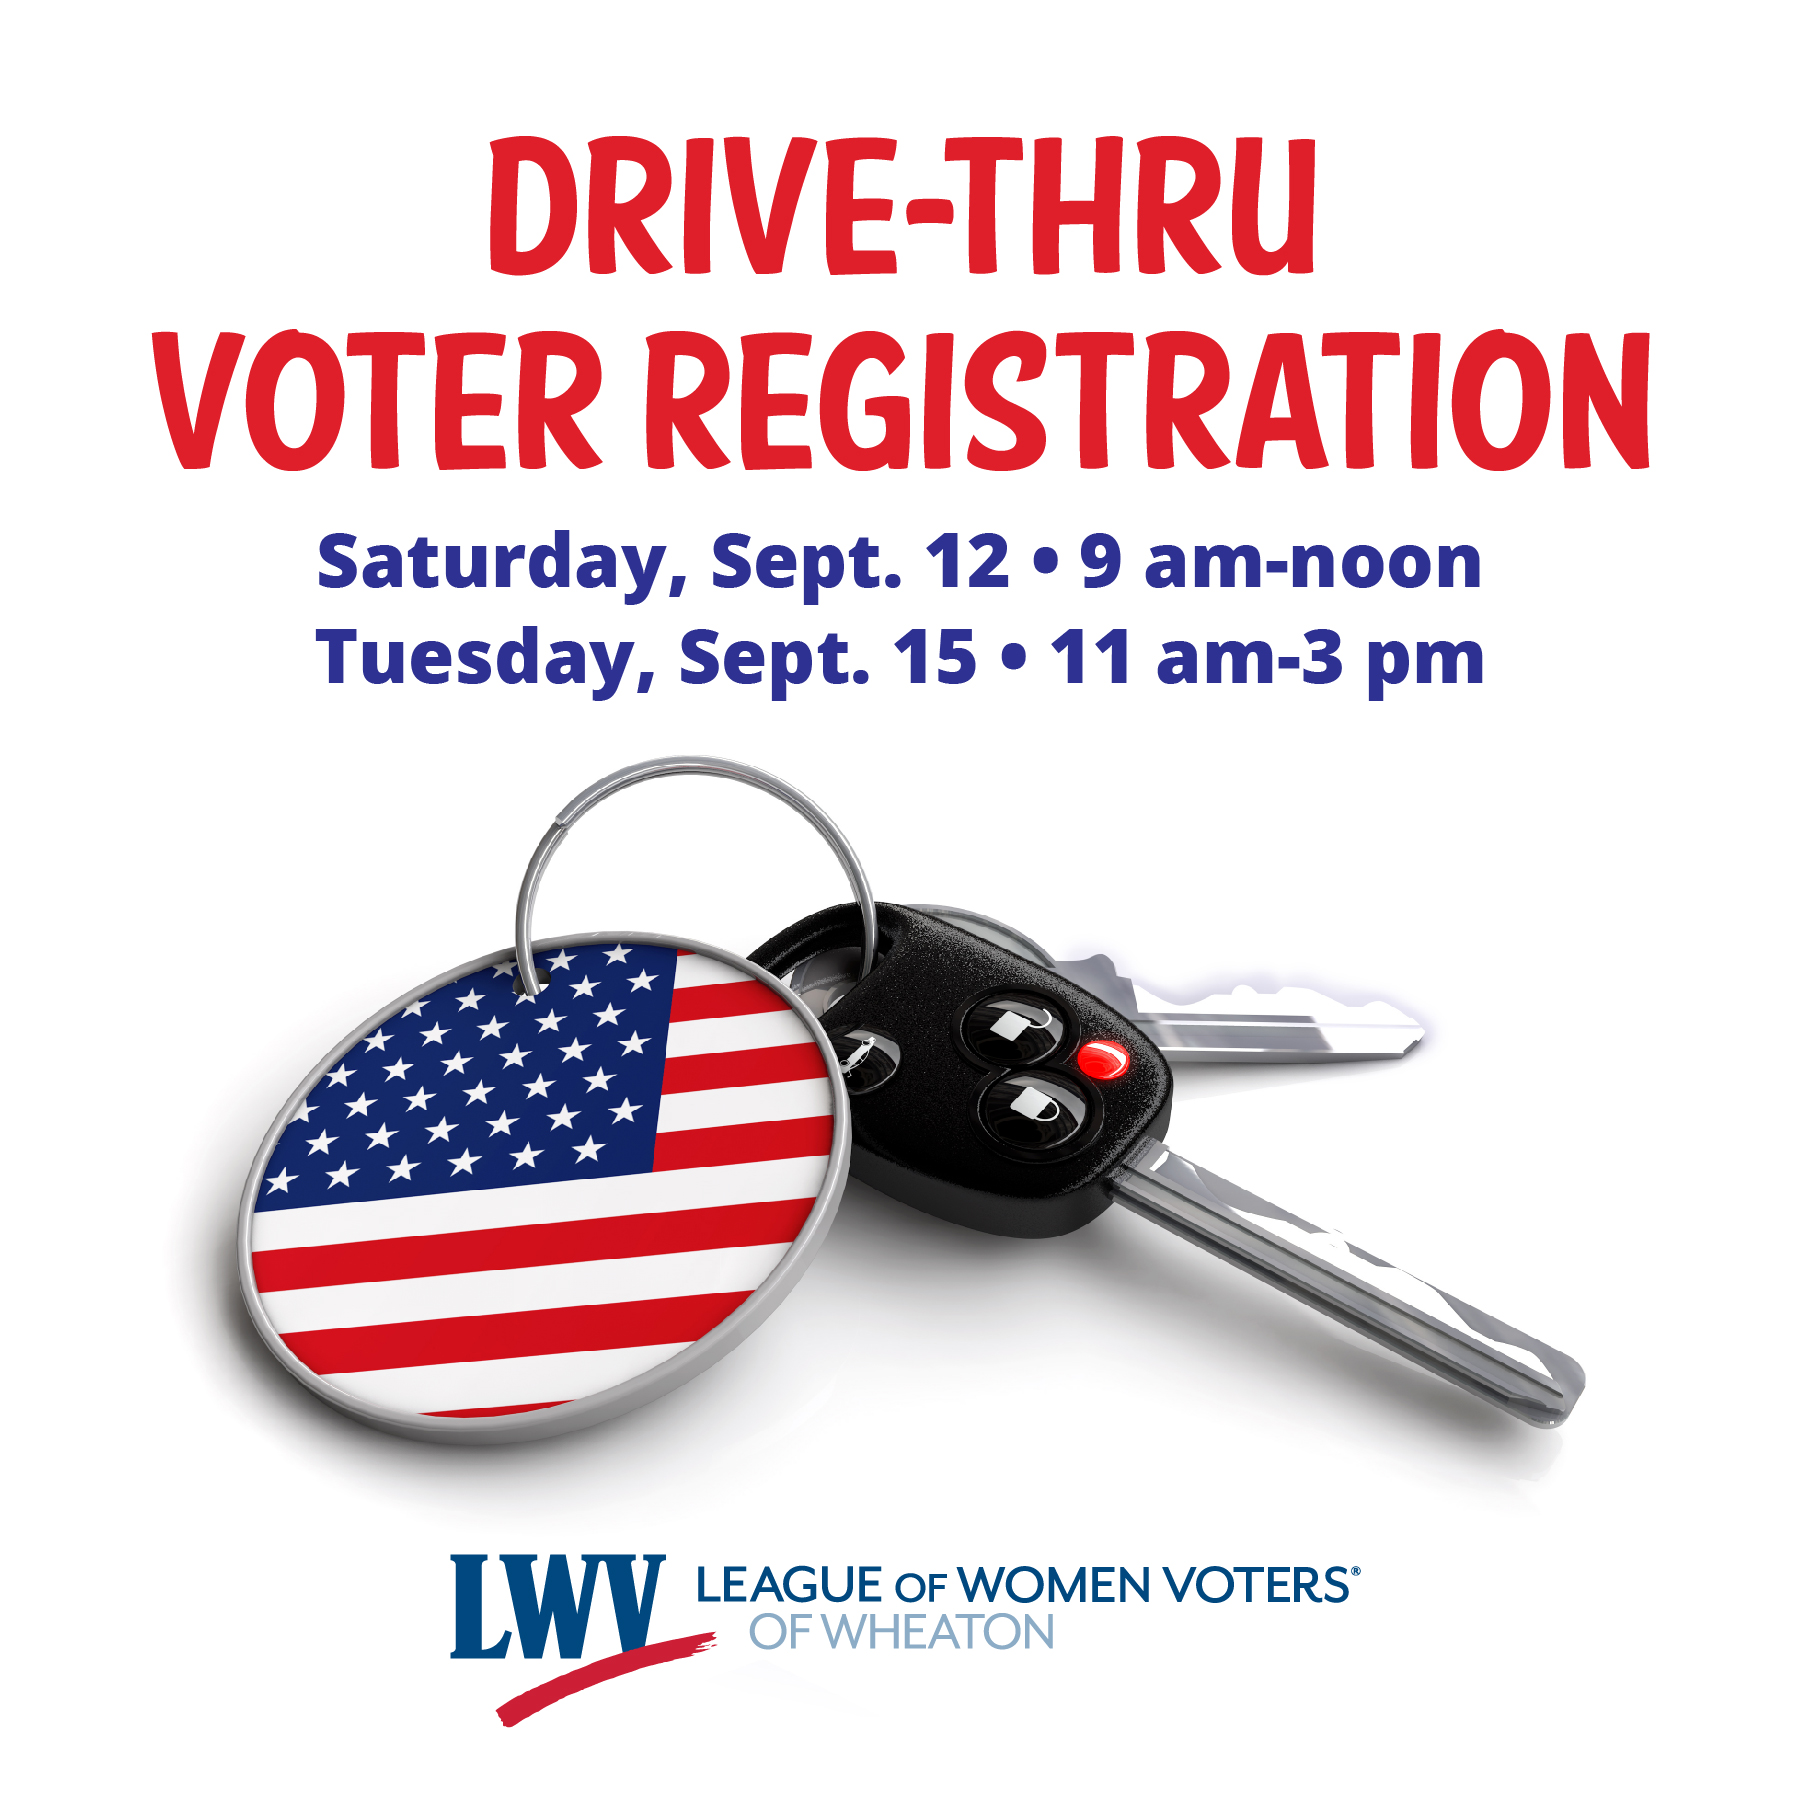 Drive-thru voter registration